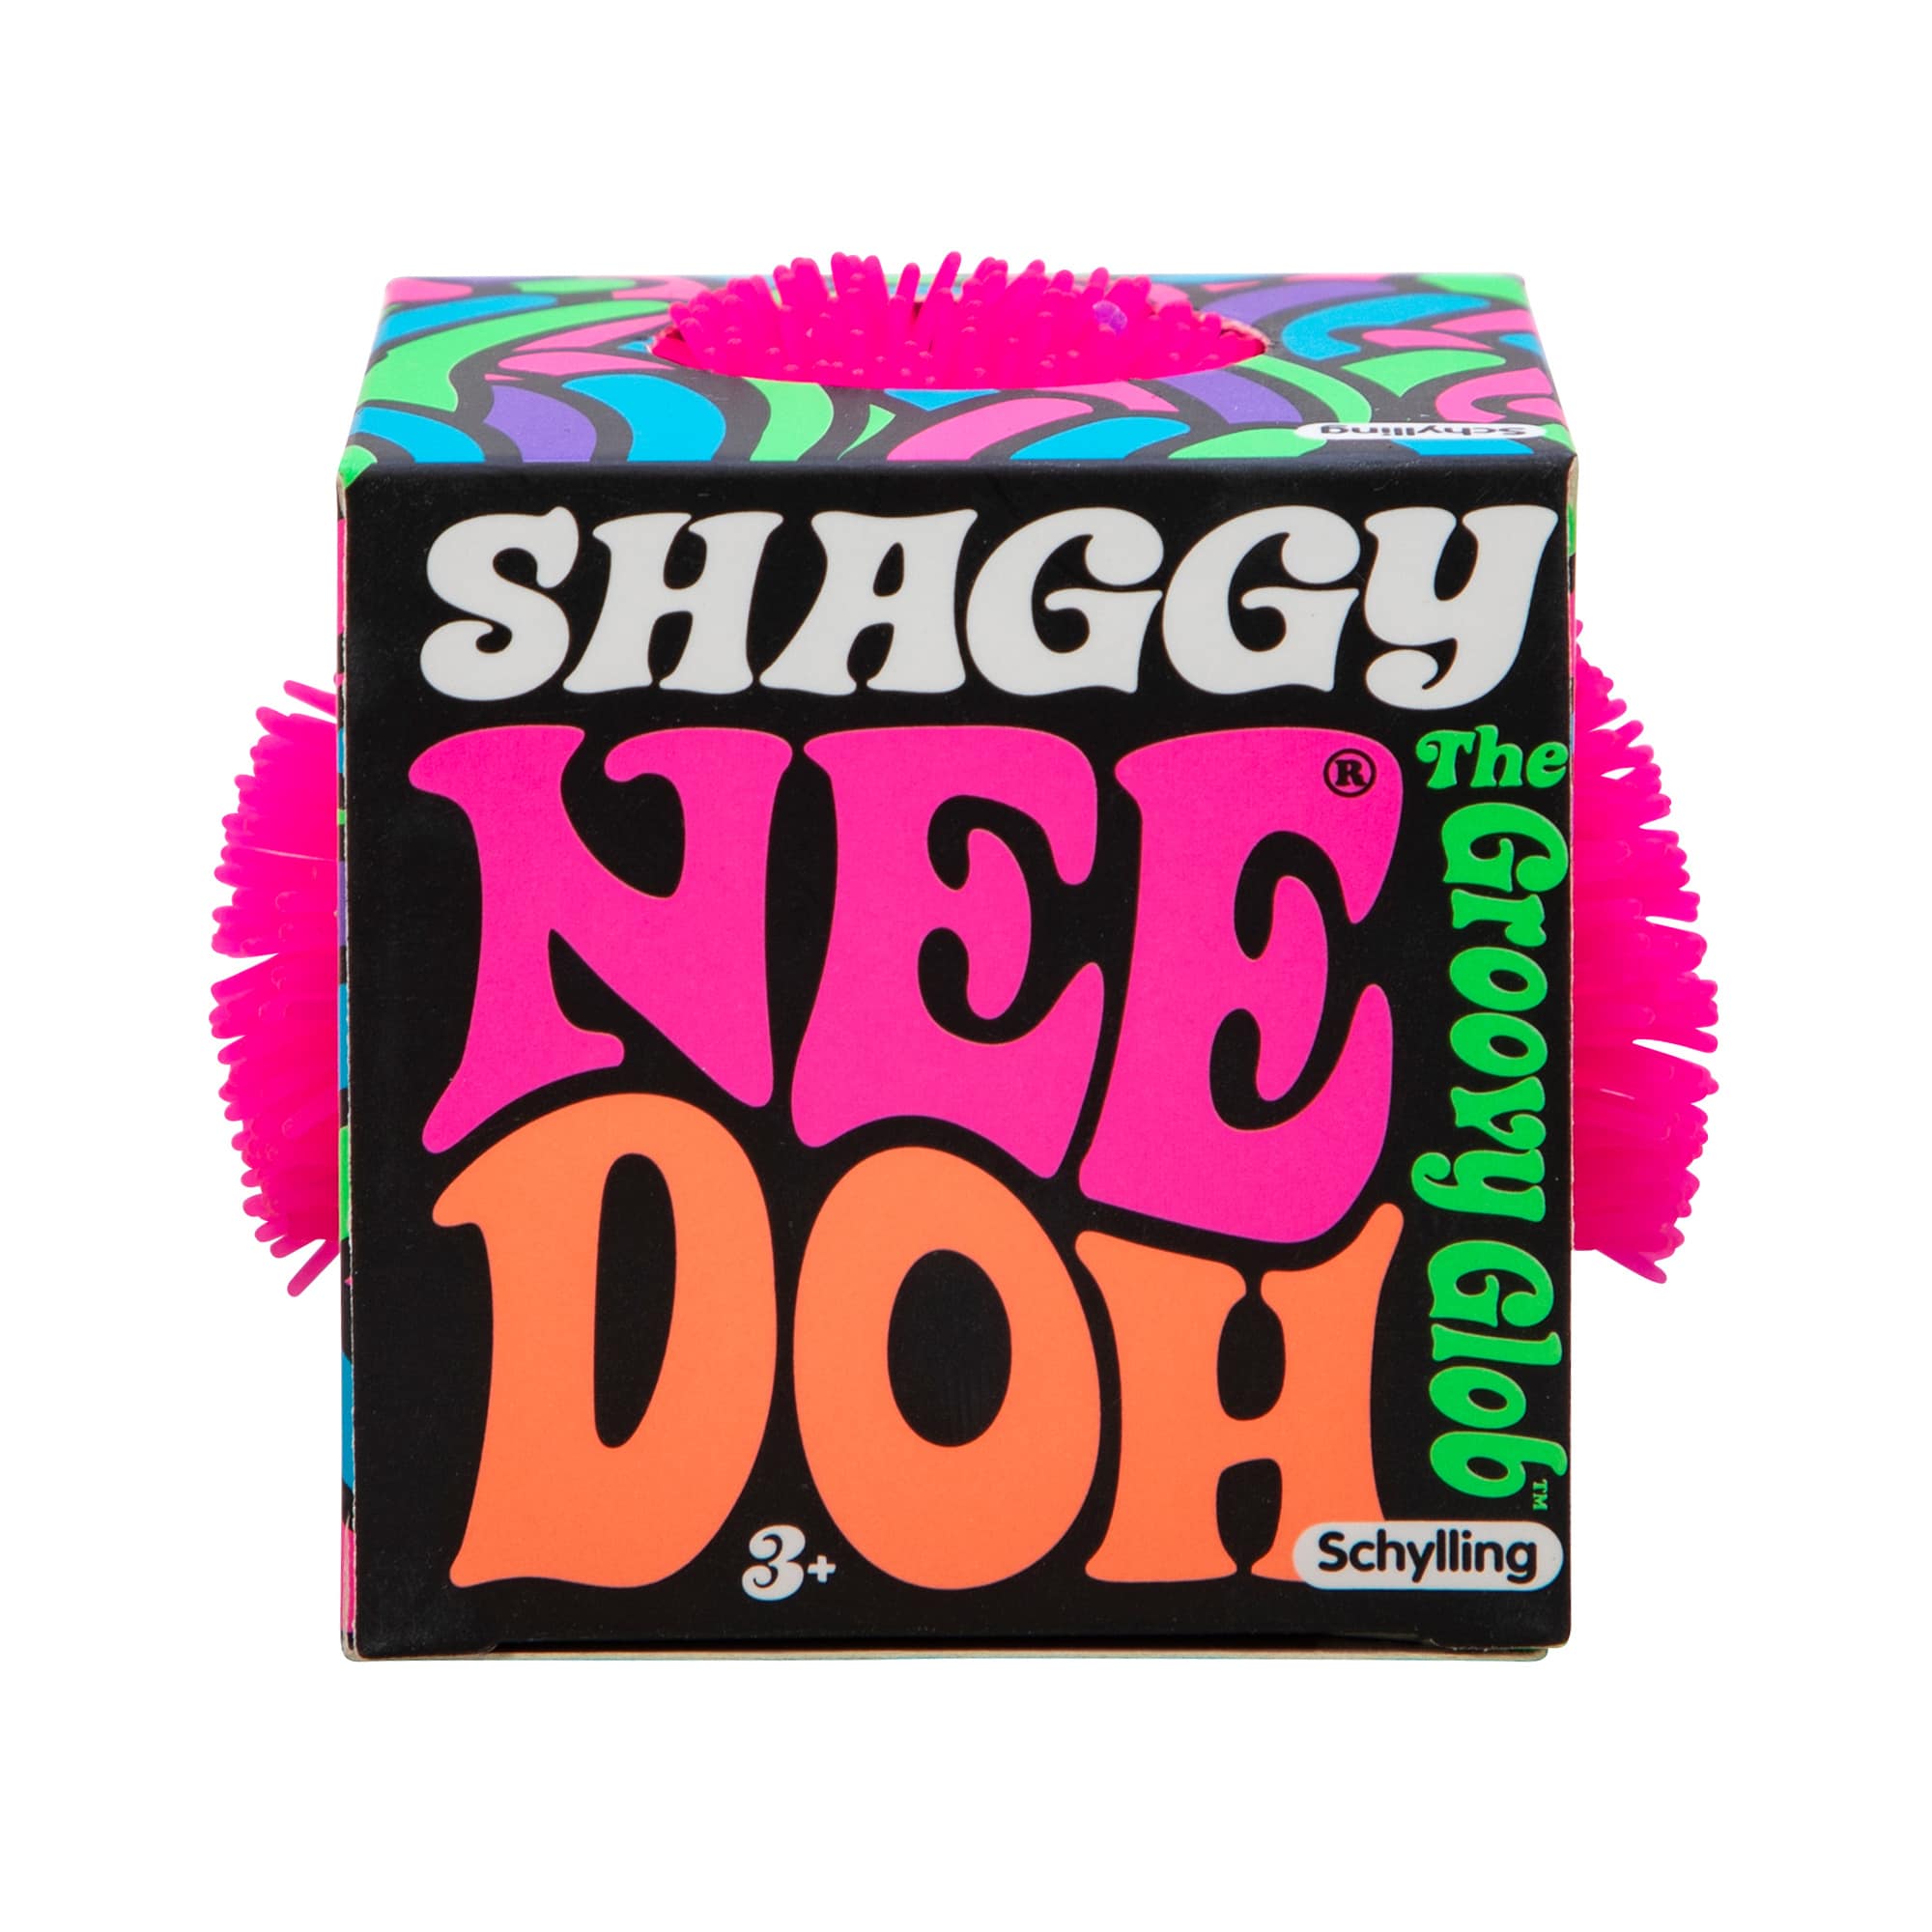 Shaggy Nee Doh - Twinkle Twinkle Little One